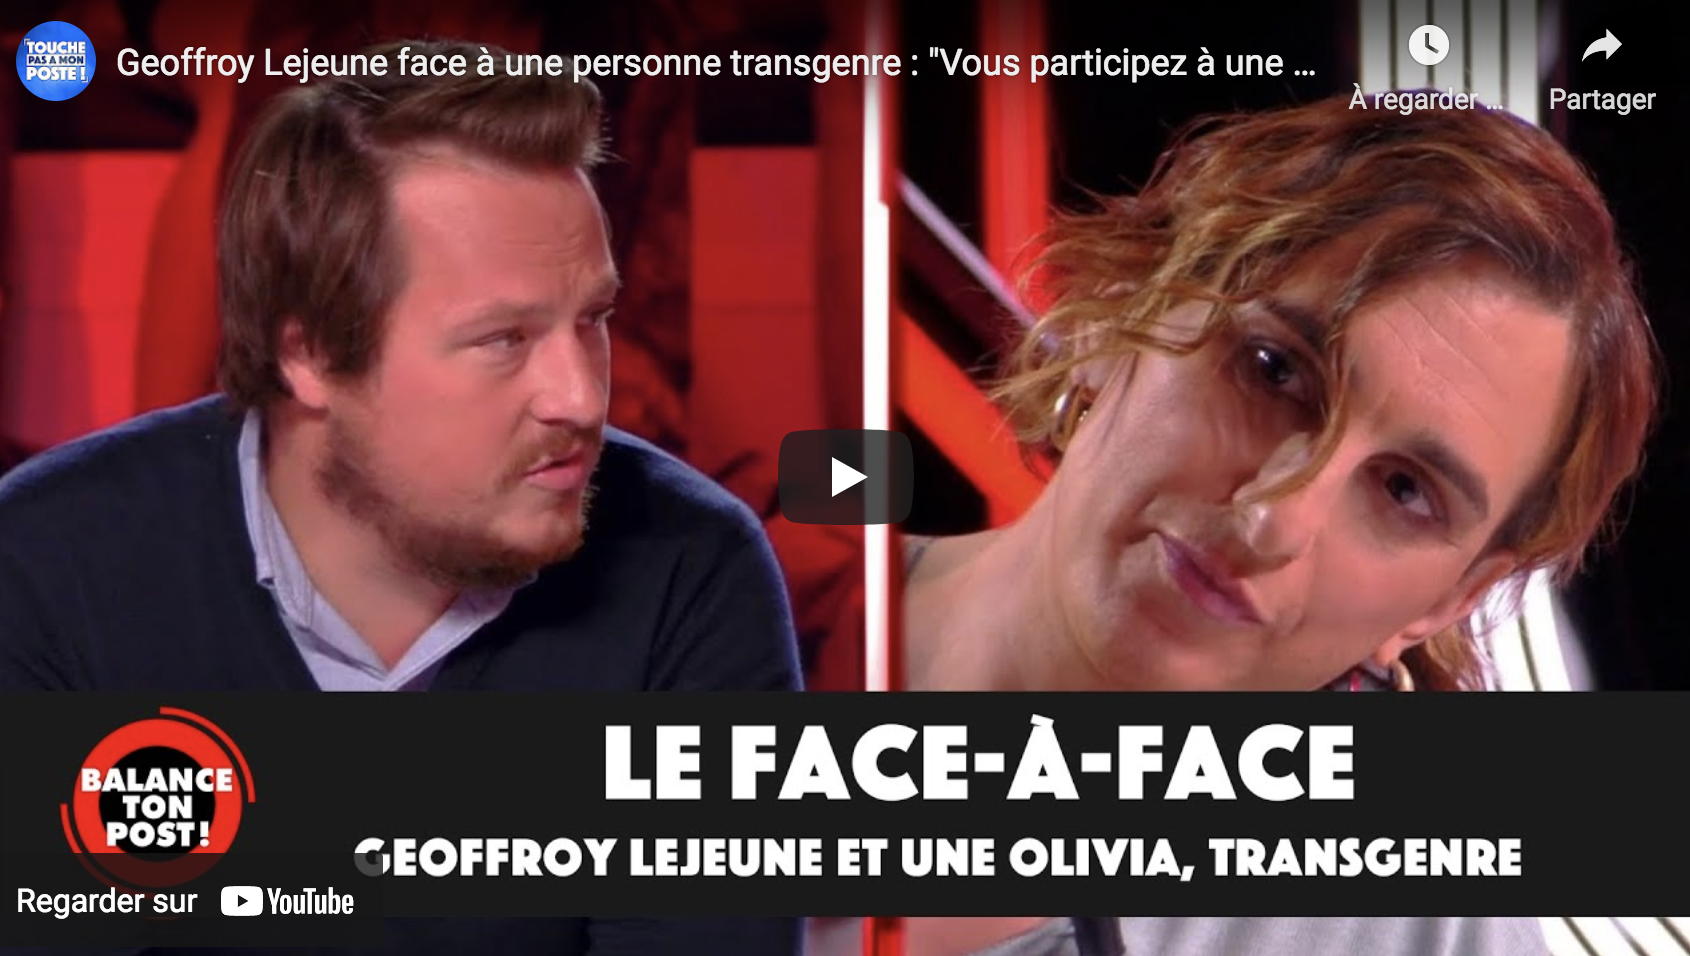 Geoffroy Lejeune face à une personne transgenre : “Vous participez à une propagande médiatique” (VIDÉO)